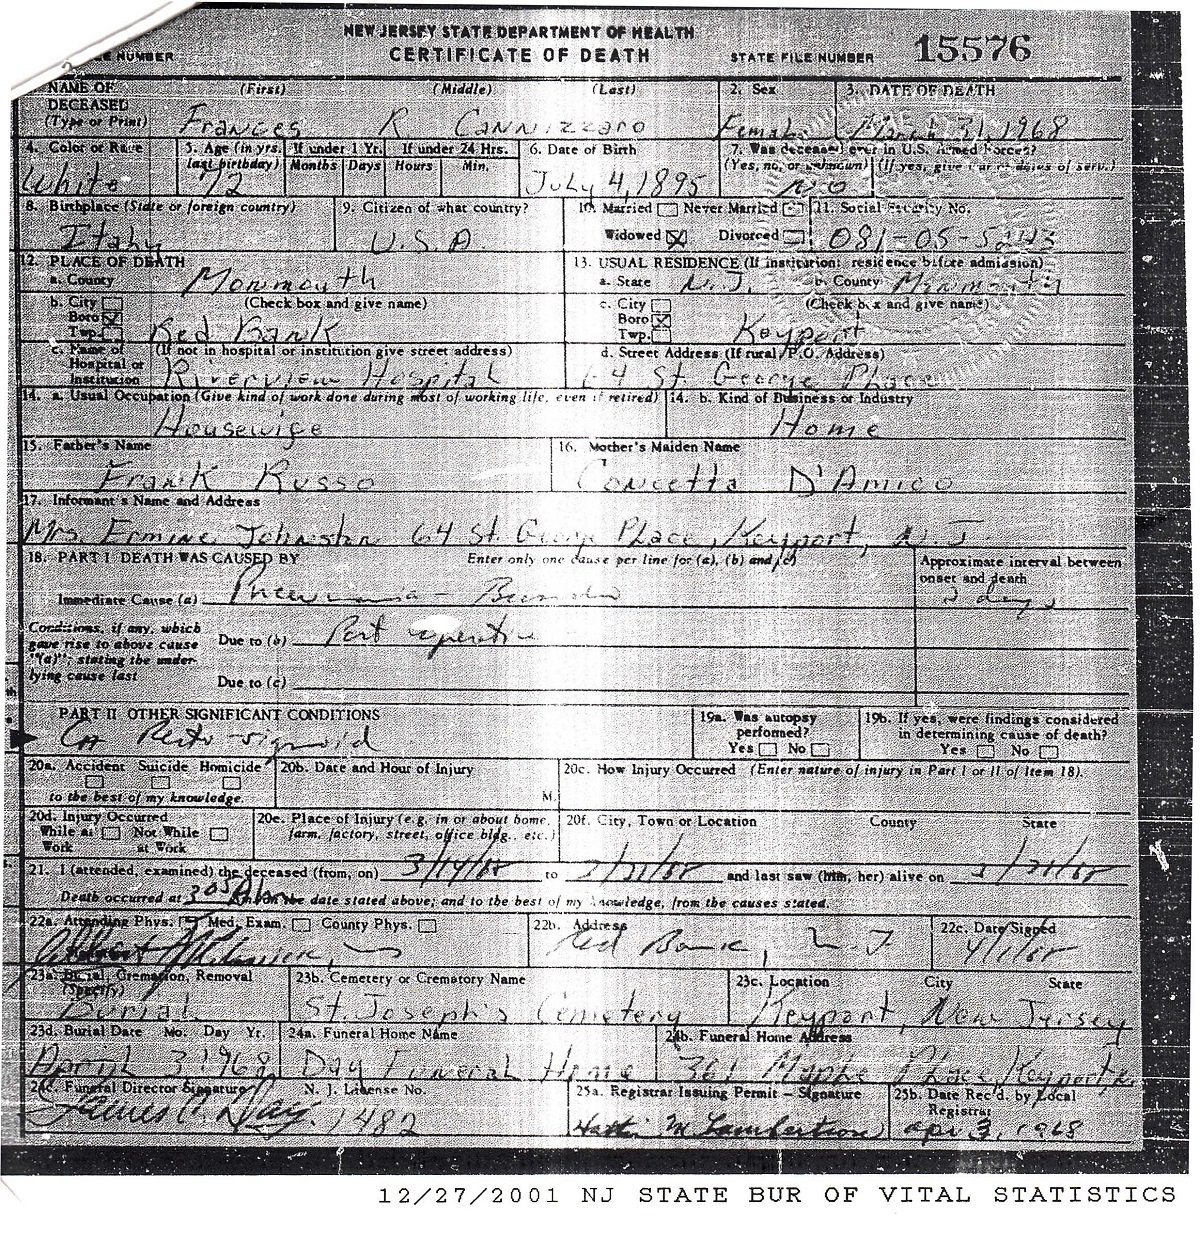 Francesca Russo Cannizzaro Death Certificate